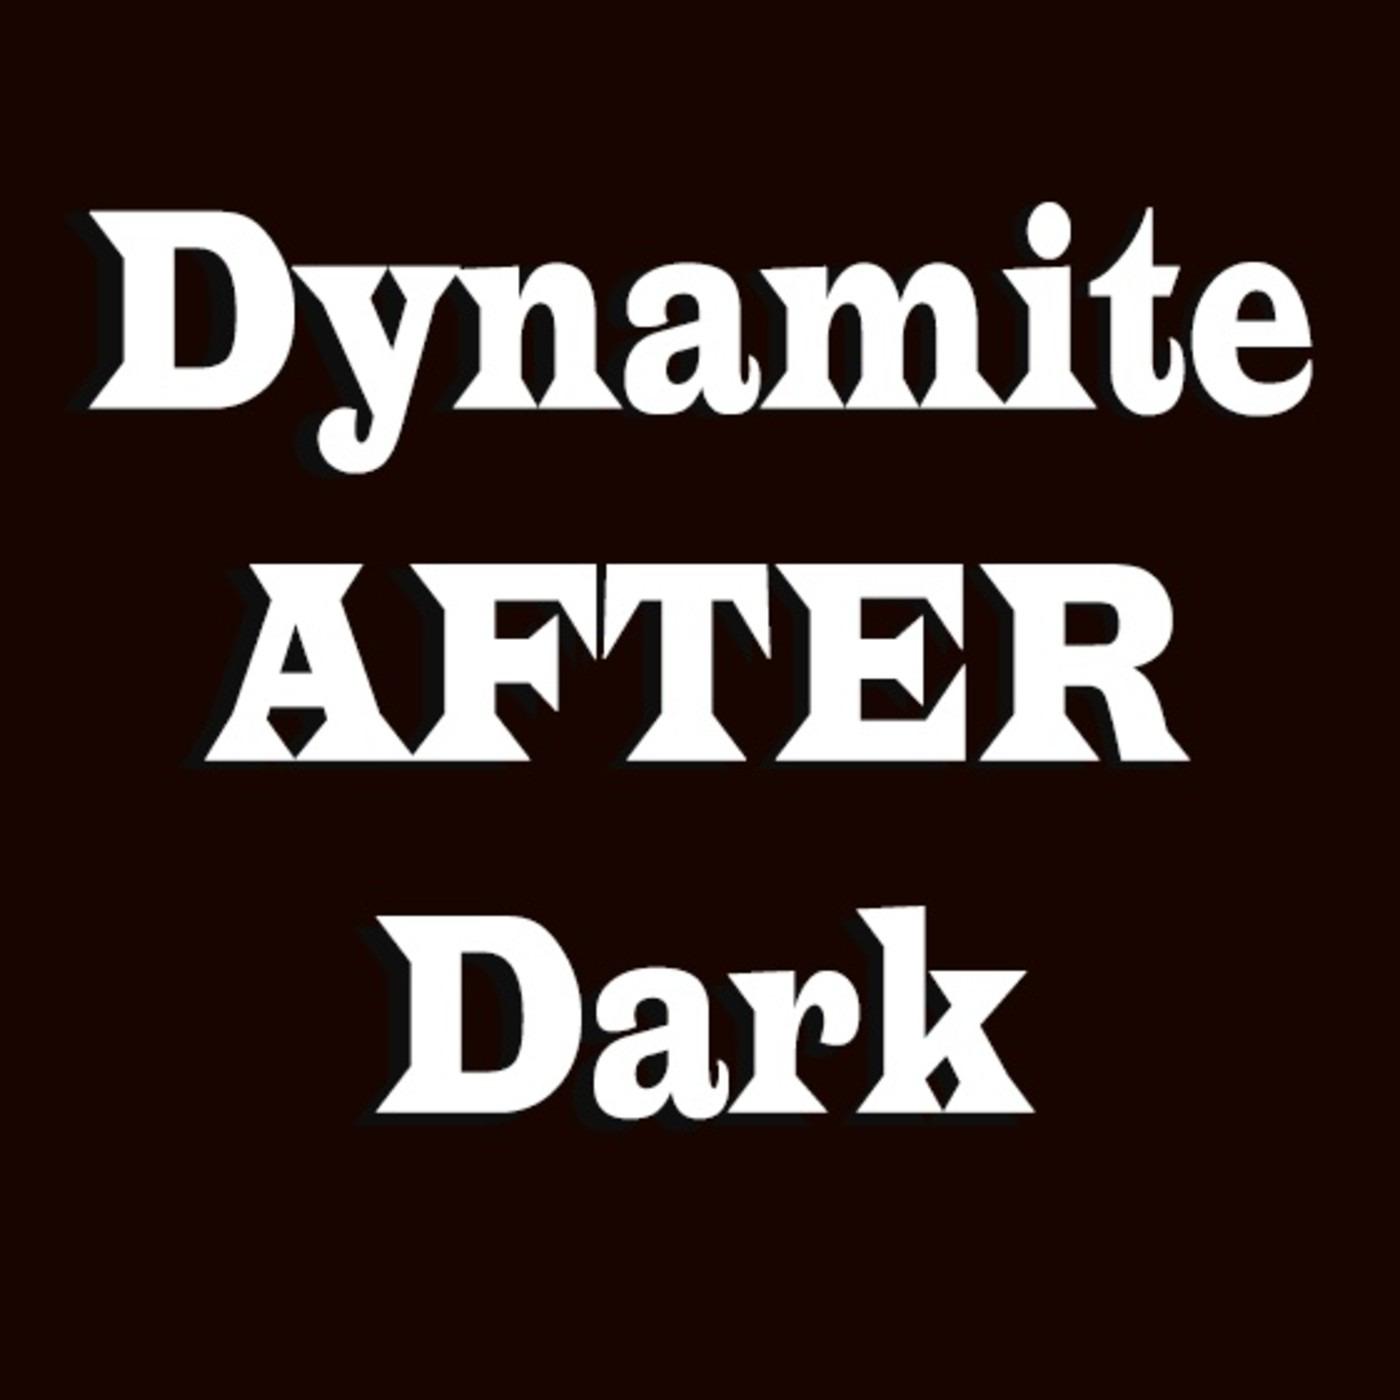 Dynamite After Dark